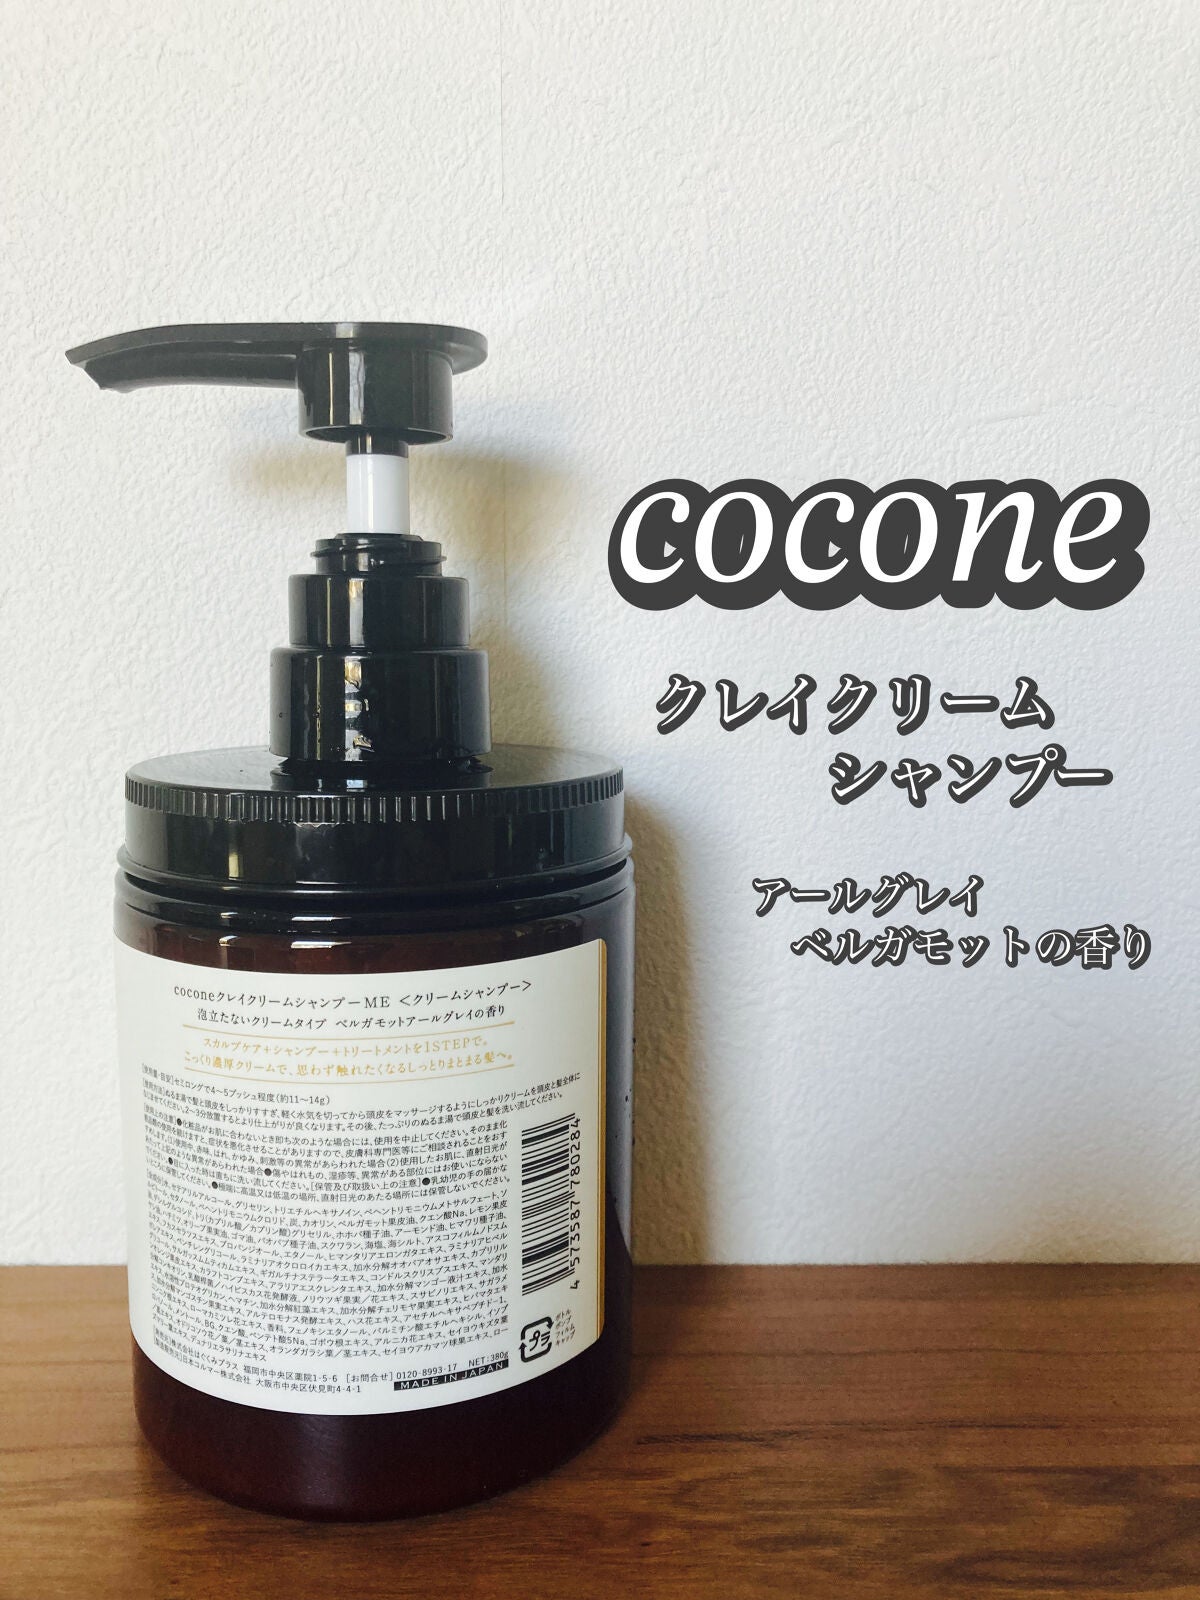 cocone クレイクリームシャンプー 本体+詰め替え用4つ-